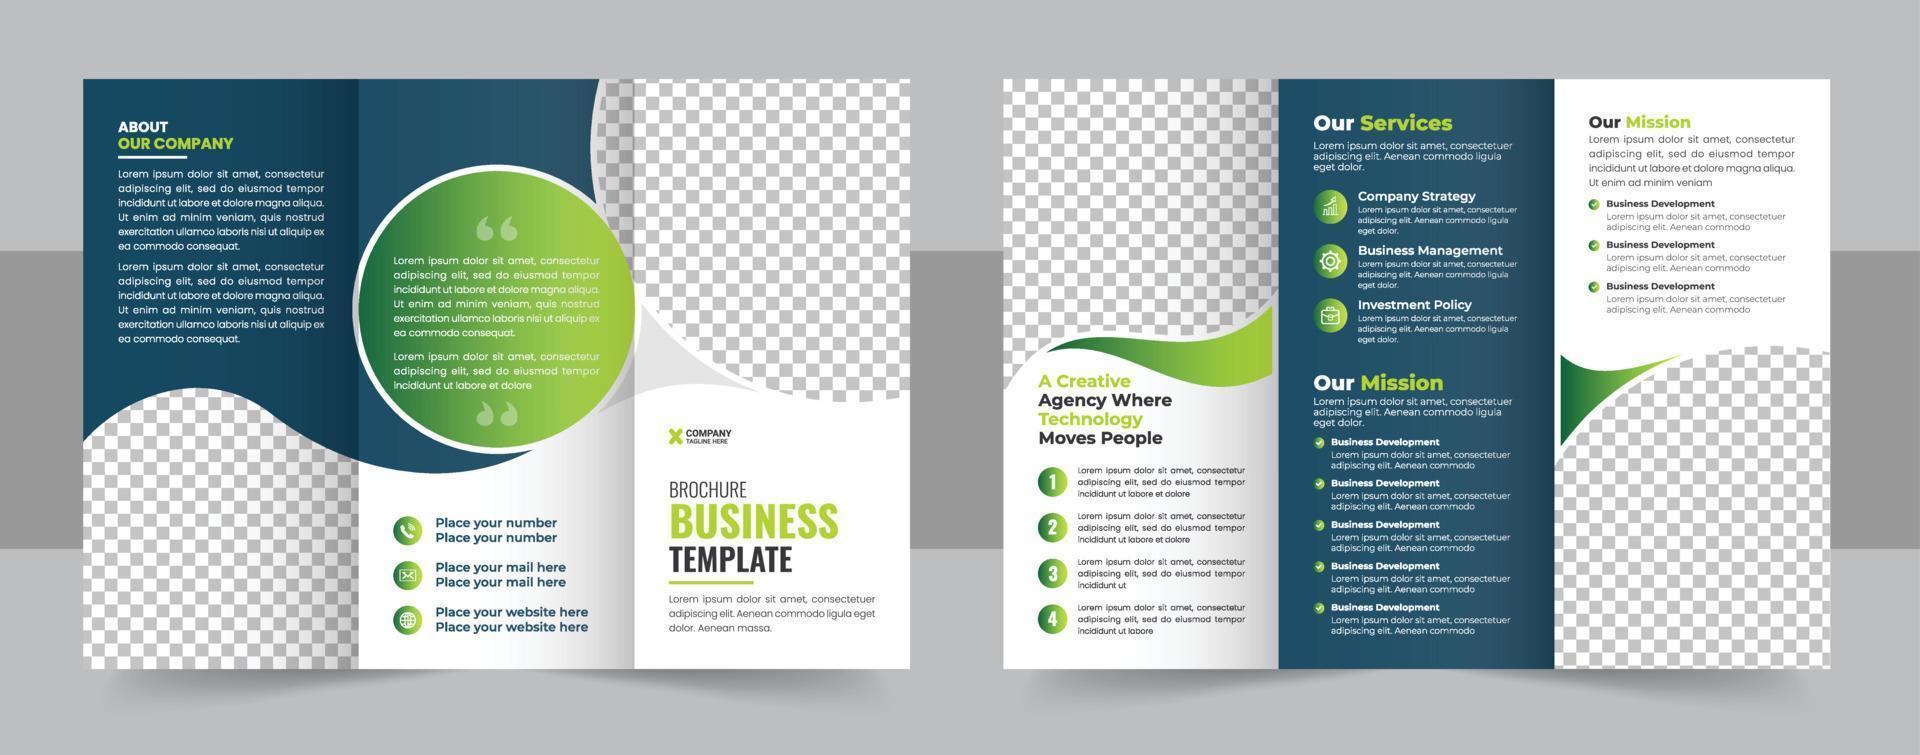 corporativo tríptico folleto modelo diseño, corporativo negocio folleto tríptico modelo diseño vector